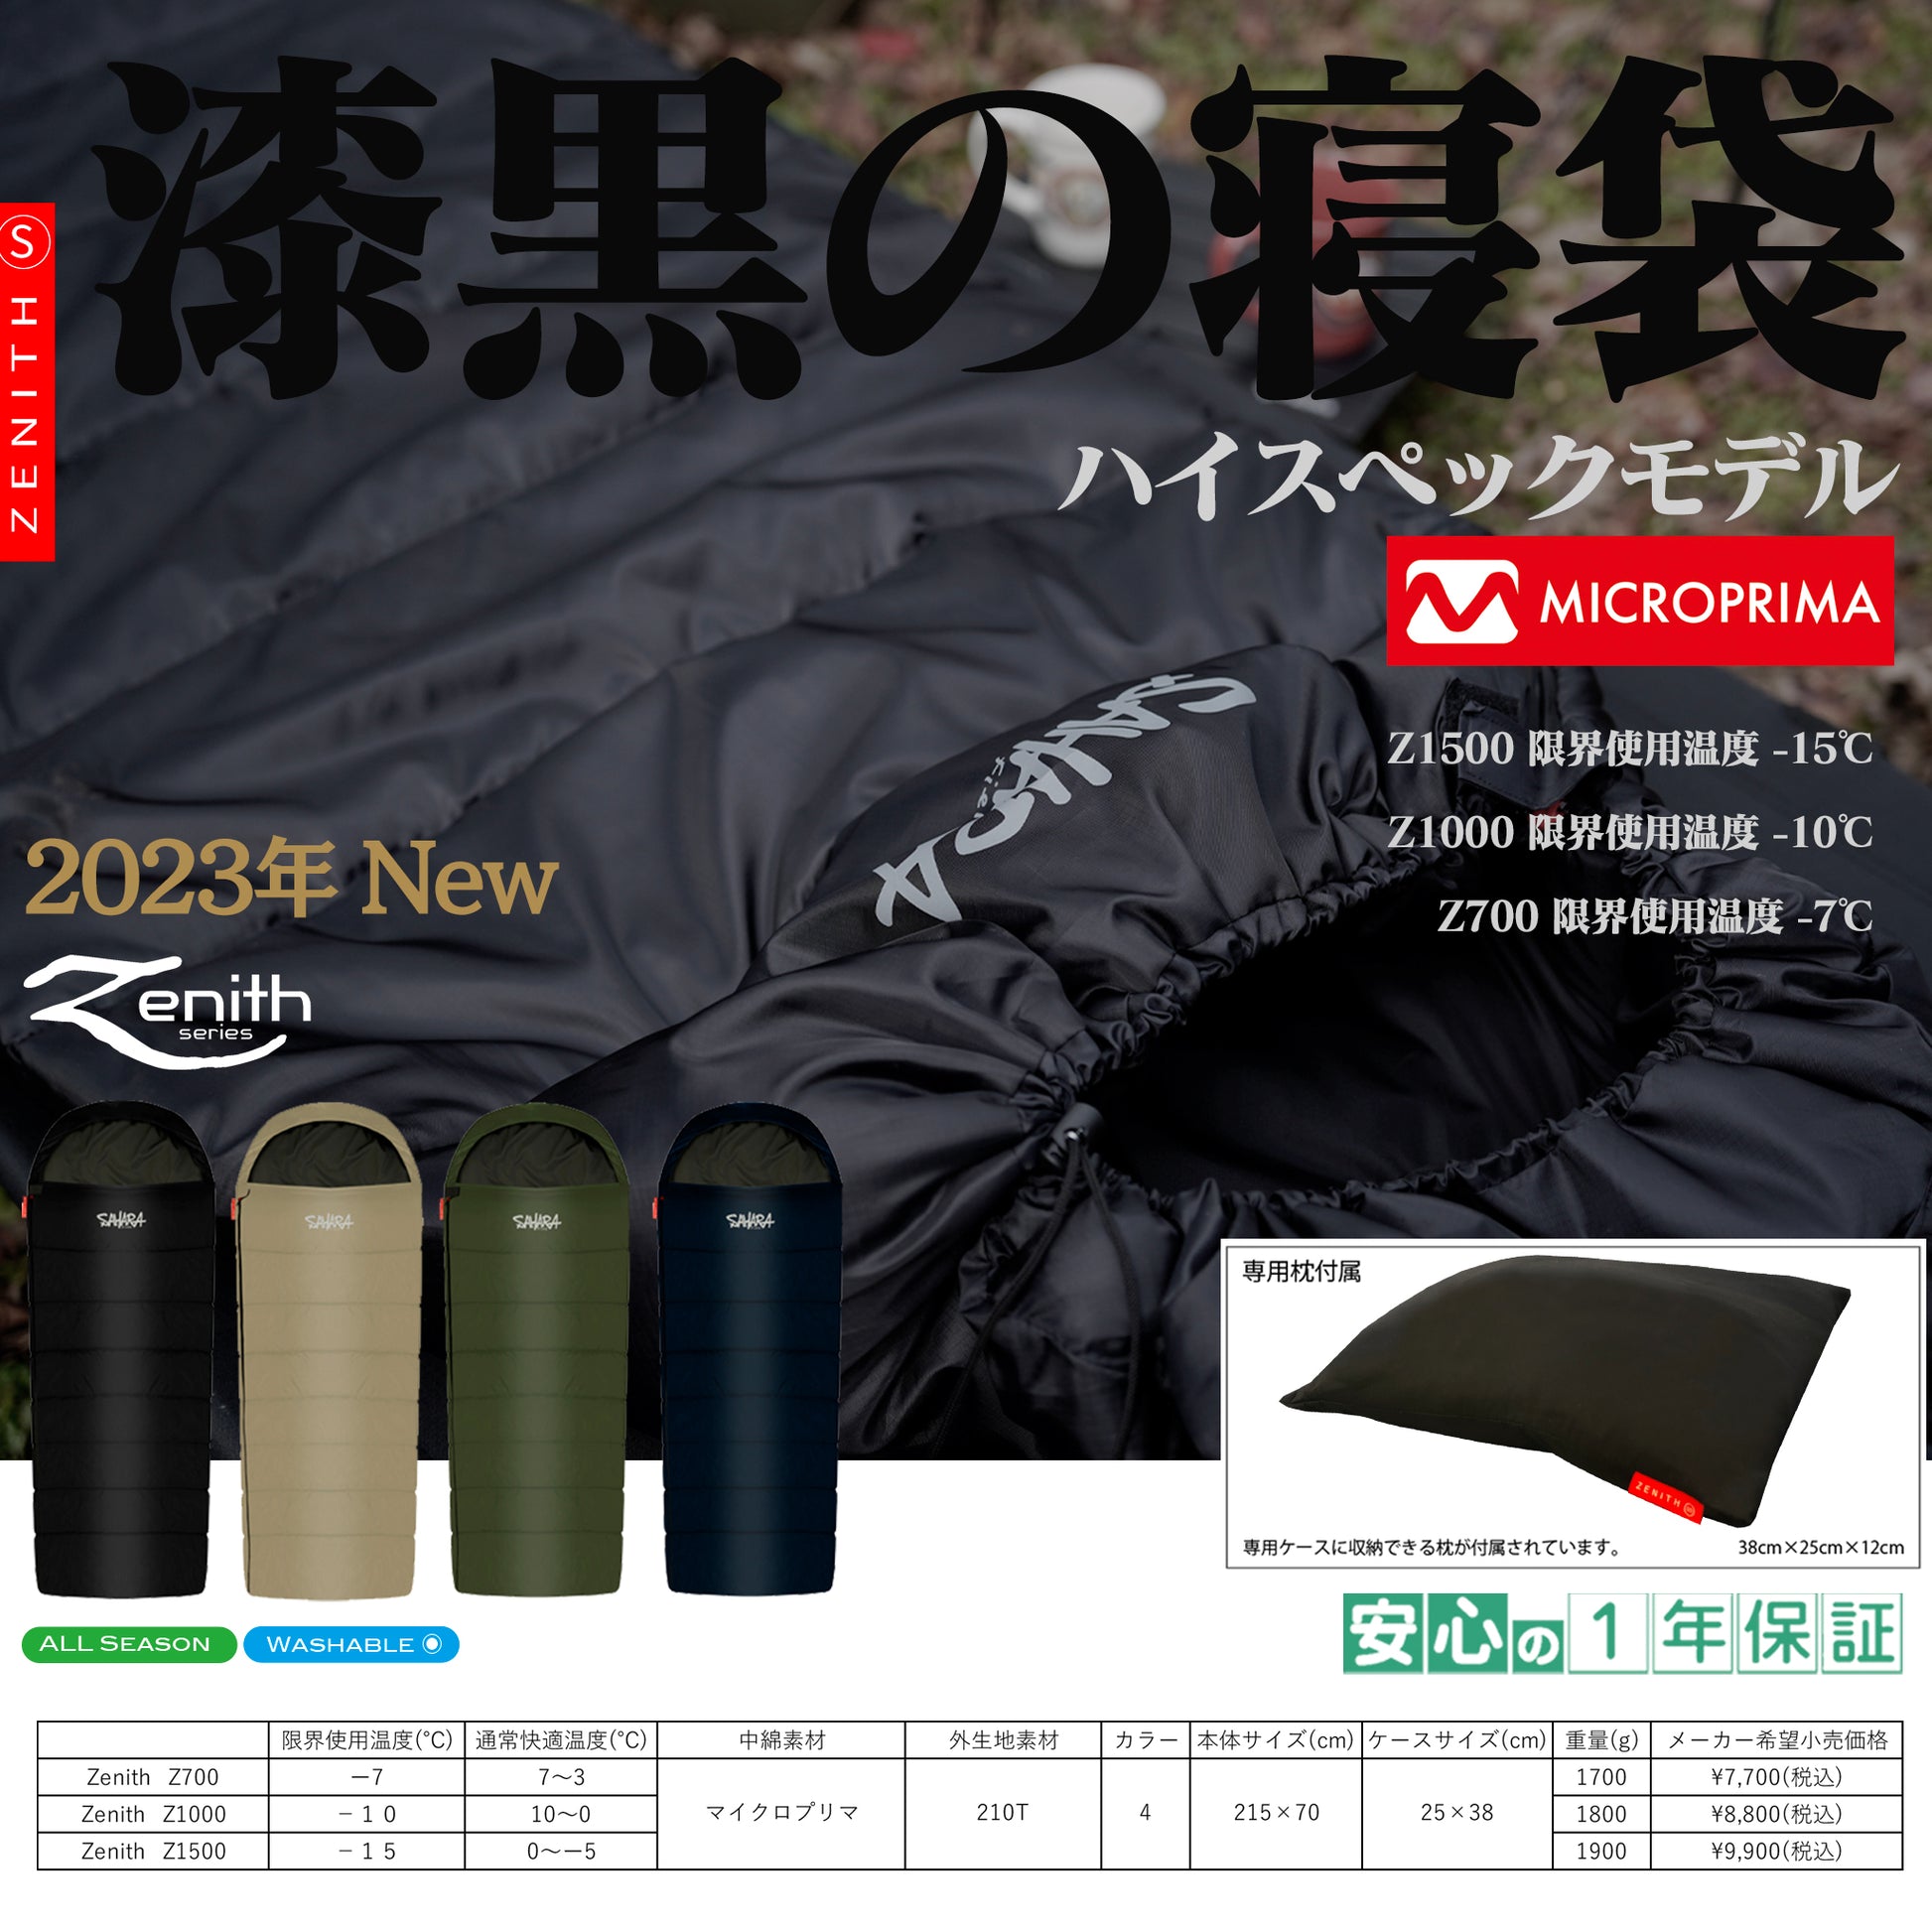 2023NEW FieldSAHARA Z1000 封筒型 枕付き 4色 限界使用可能温度 -10℃ ダウン - FieldSAHARA